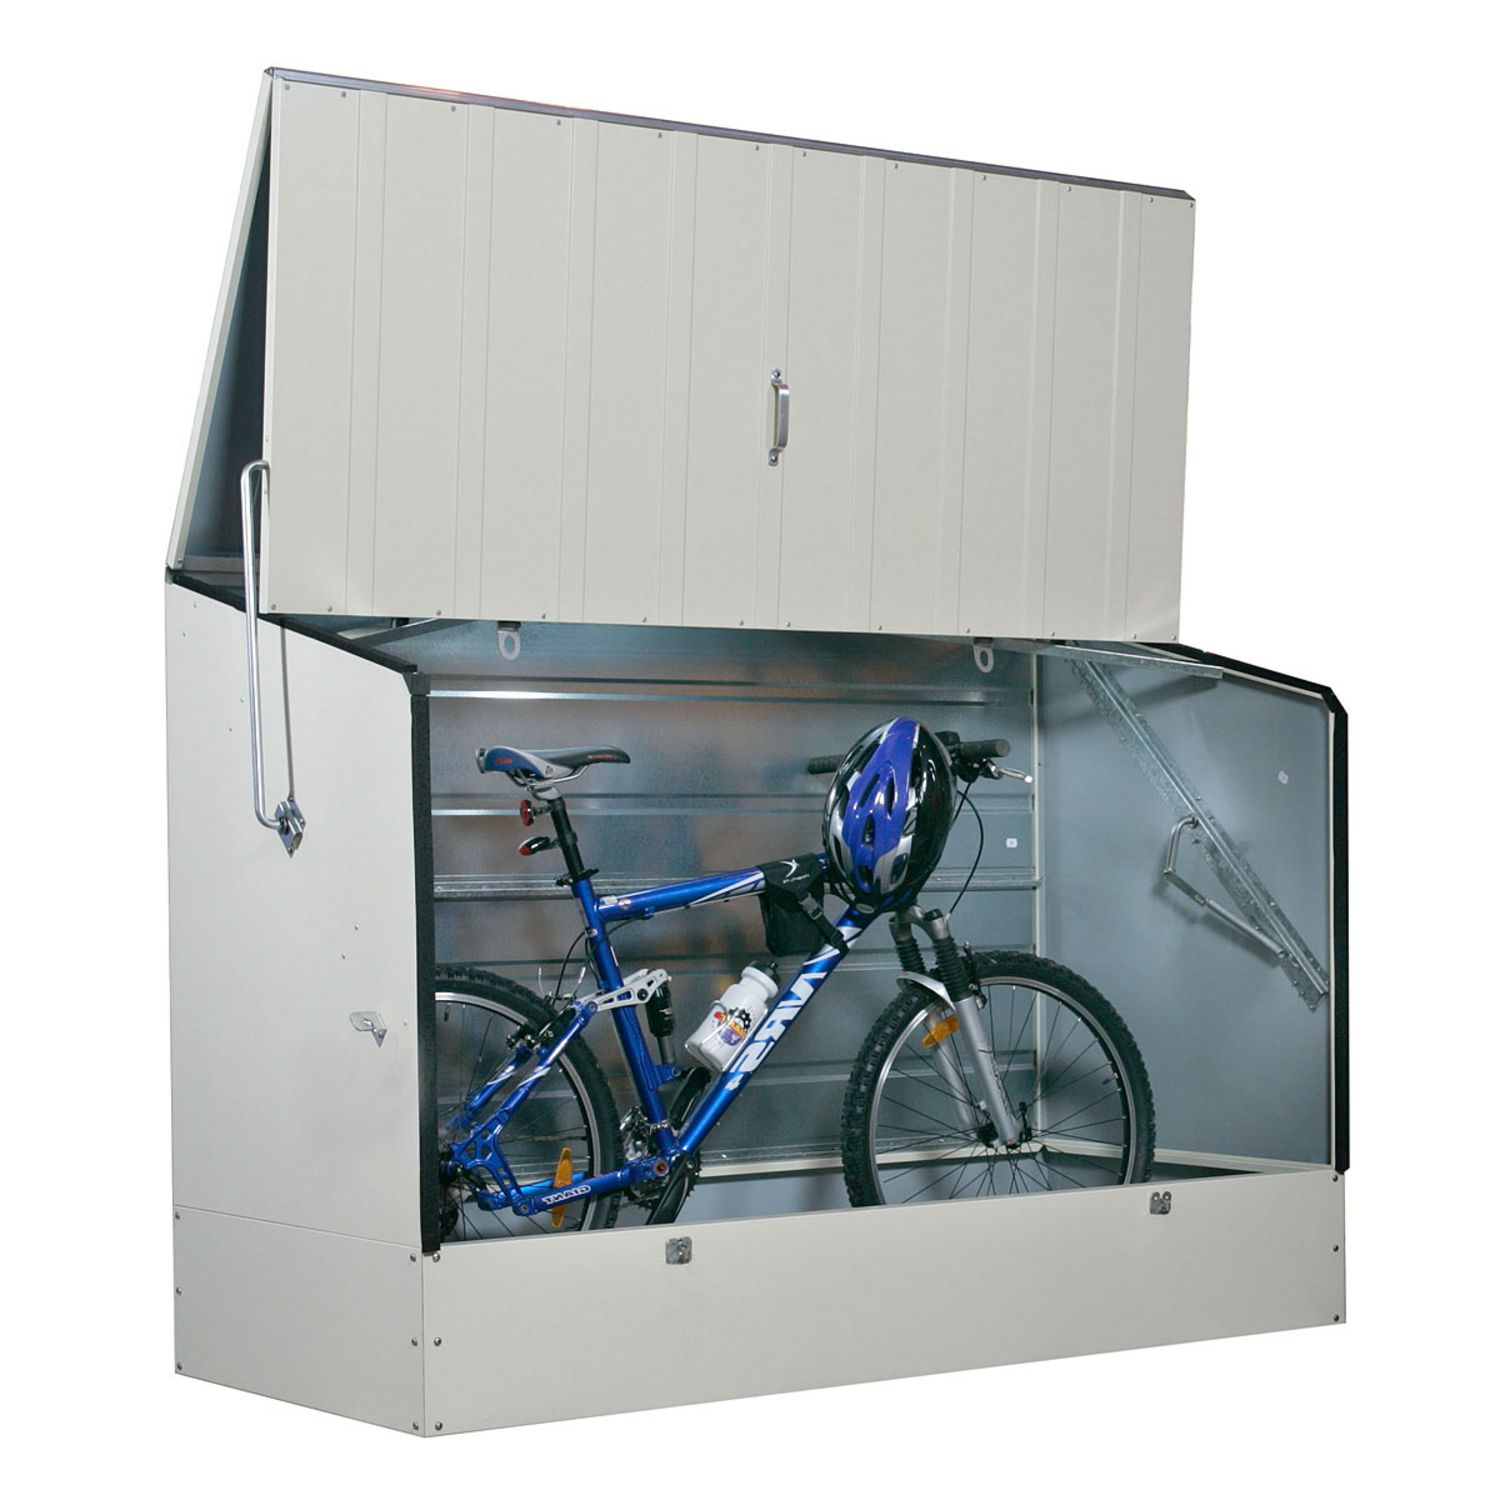 BikeBox : un garage sur mesure pour votre moto